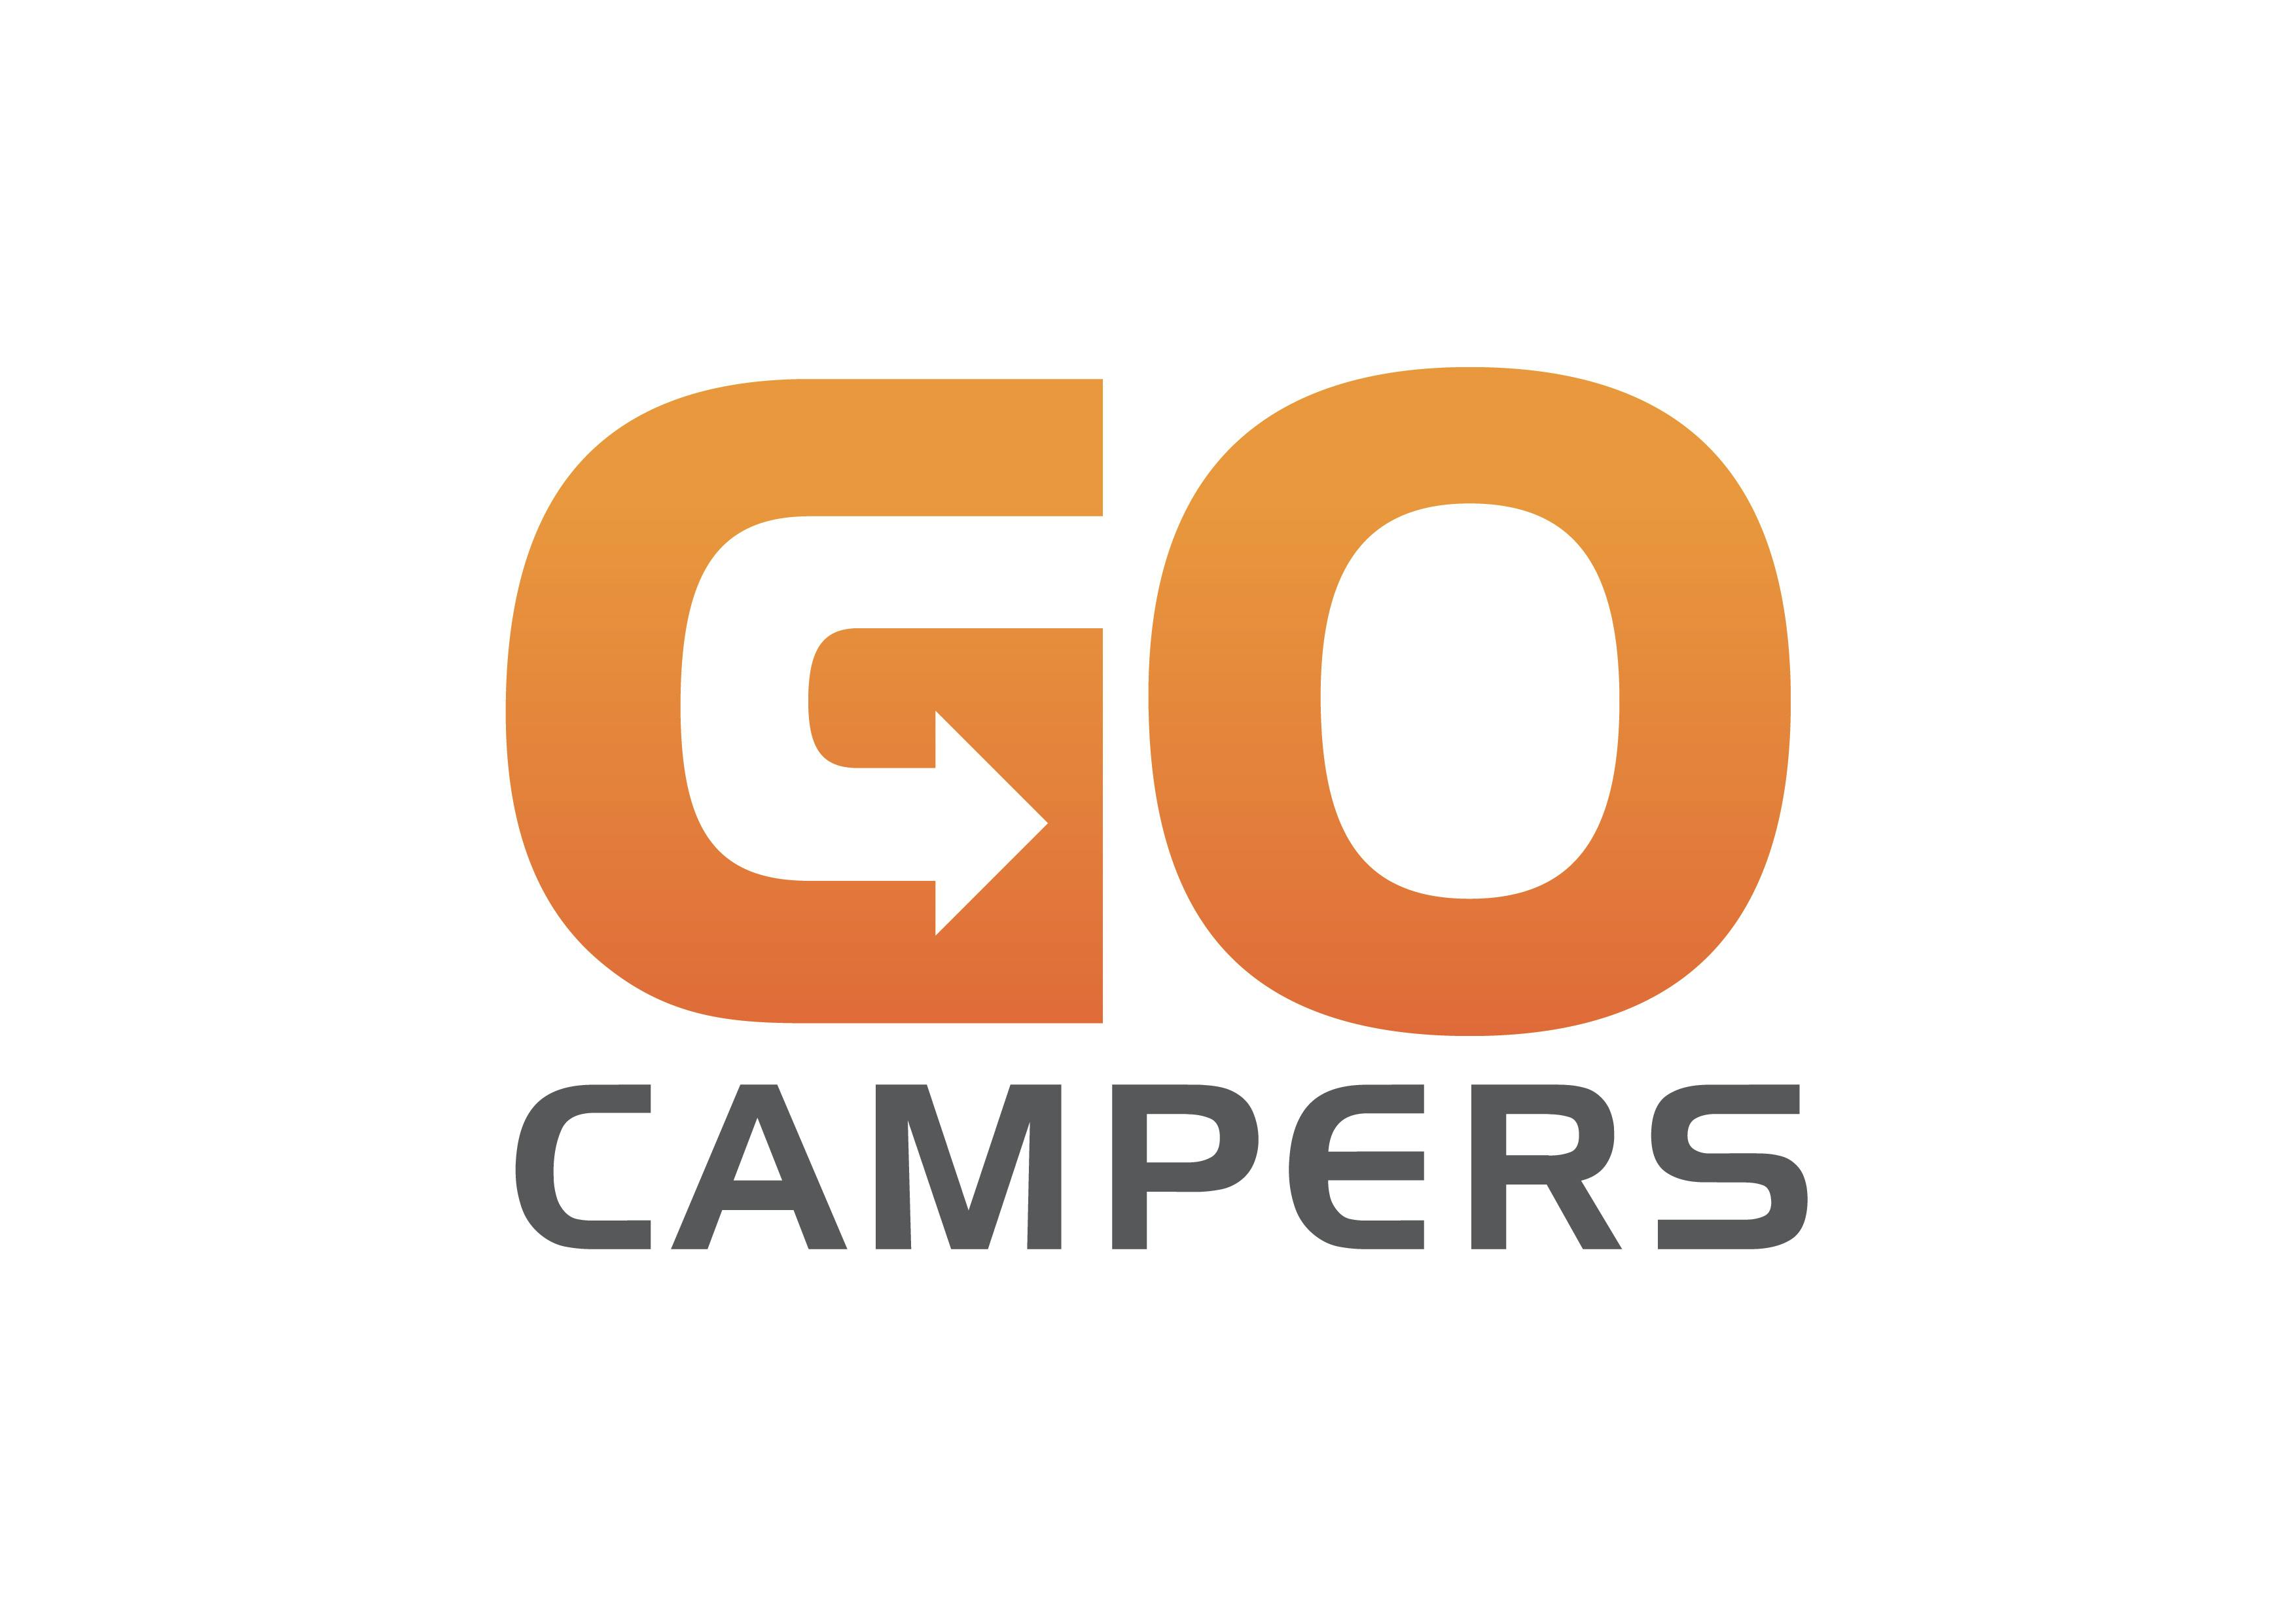 Go_campers_logo.jpg